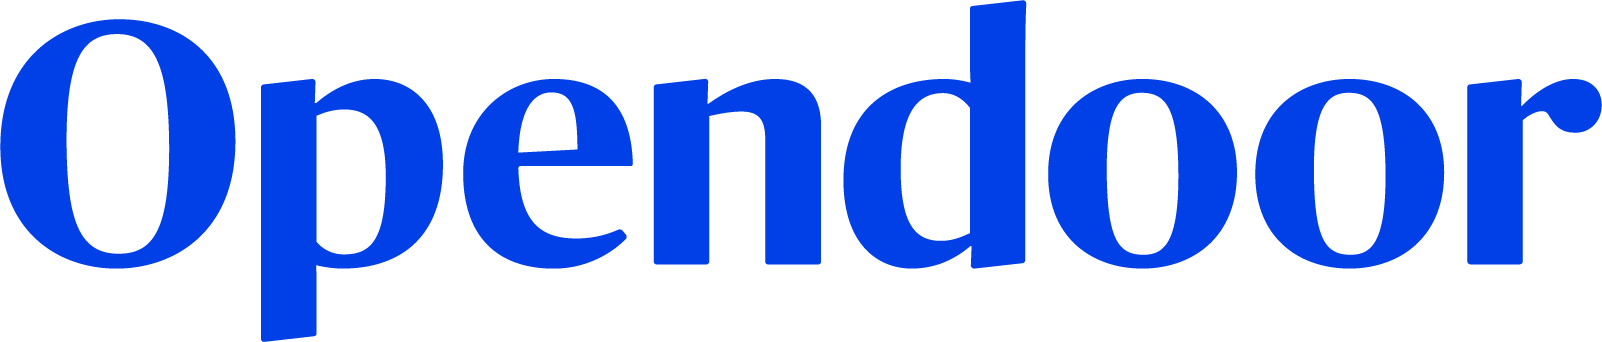 Opendoor Logo.jpg